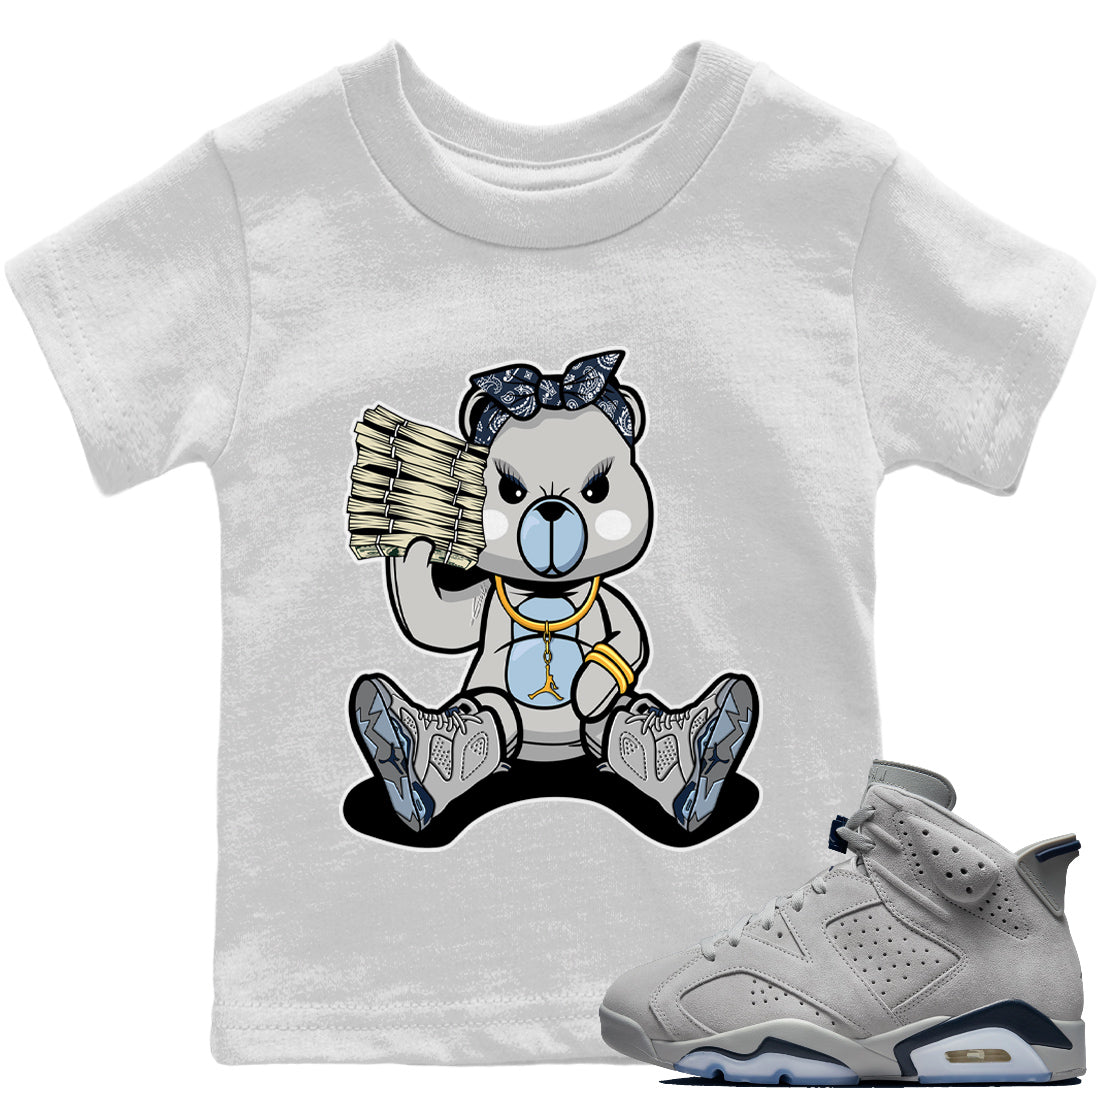 Jordan 6 Georgetown Sneaker Match Tees Bad Baby Bear Sneaker Tees Jordan 6 Georgetown Sneaker Release Tees Kids Shirts